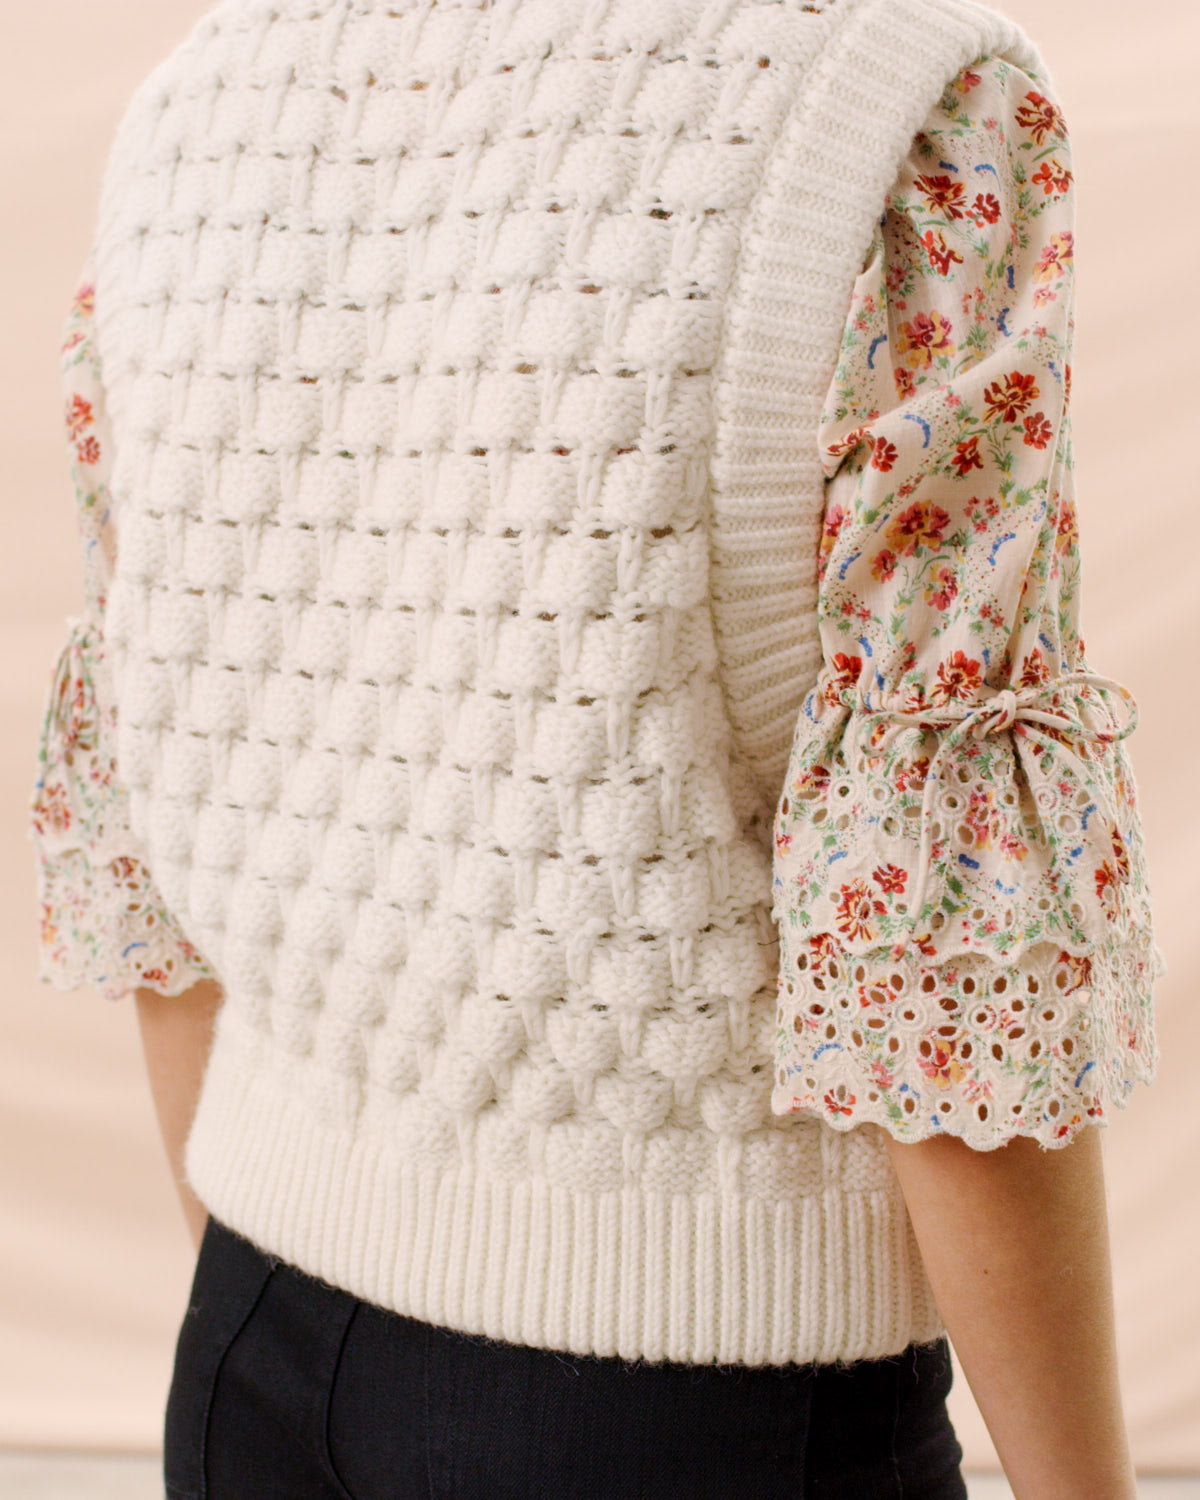 Cotton Knit Vest - Vintage